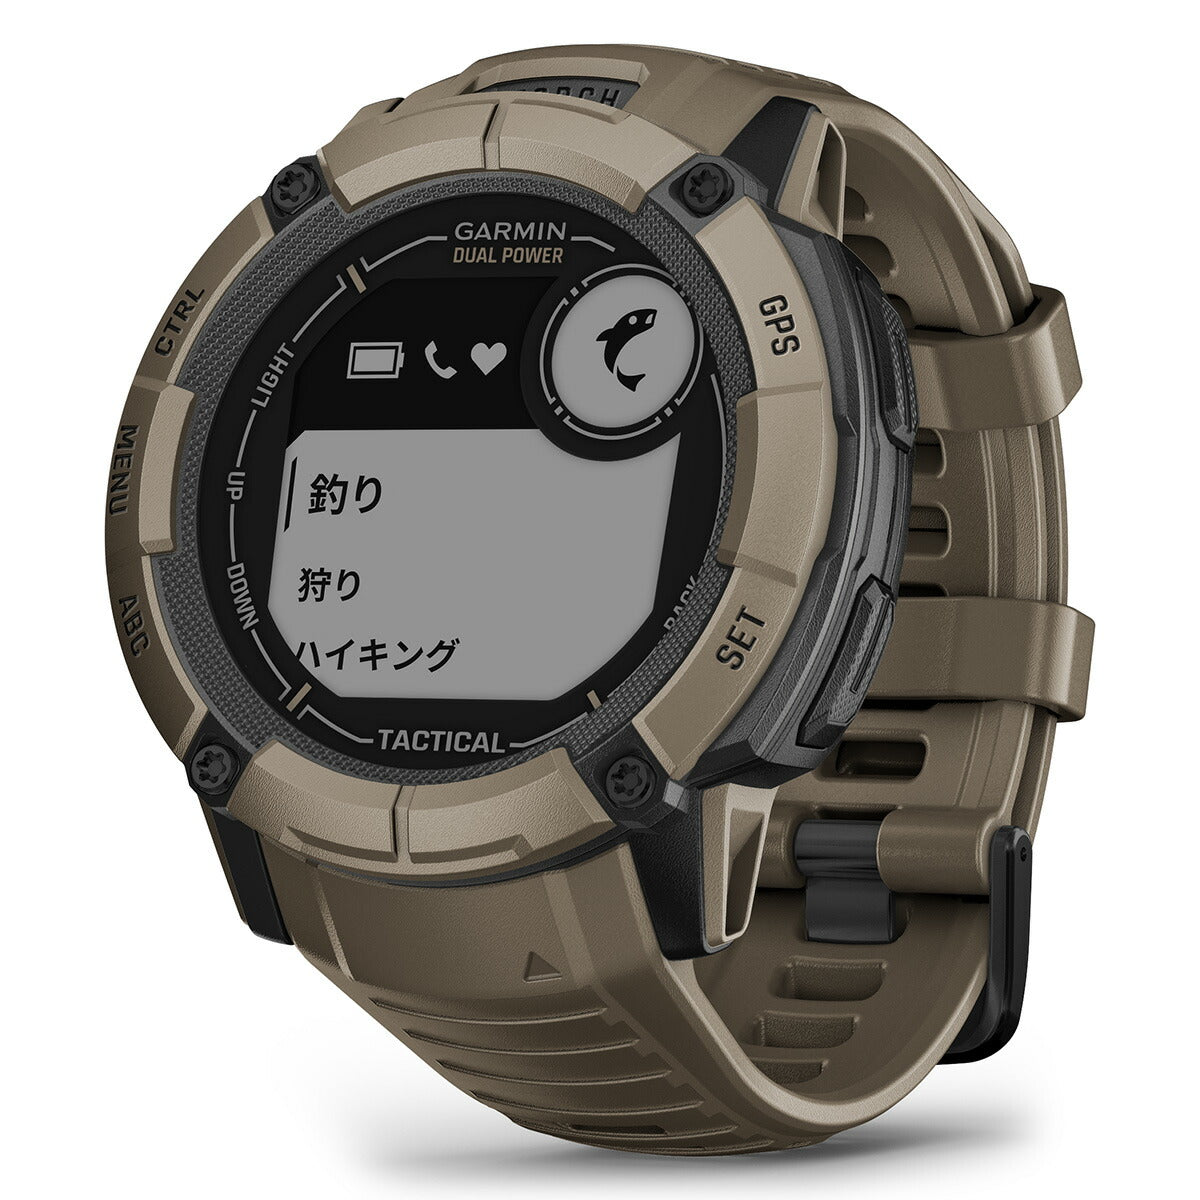 【24回分割手数料無料！】ガーミン GARMIN Instinct 2X Dual Power Tactical Edition インスティンクト2X デュアルパワー タクティカル 010-02805-62 GPS スマートウォッチ 腕時計